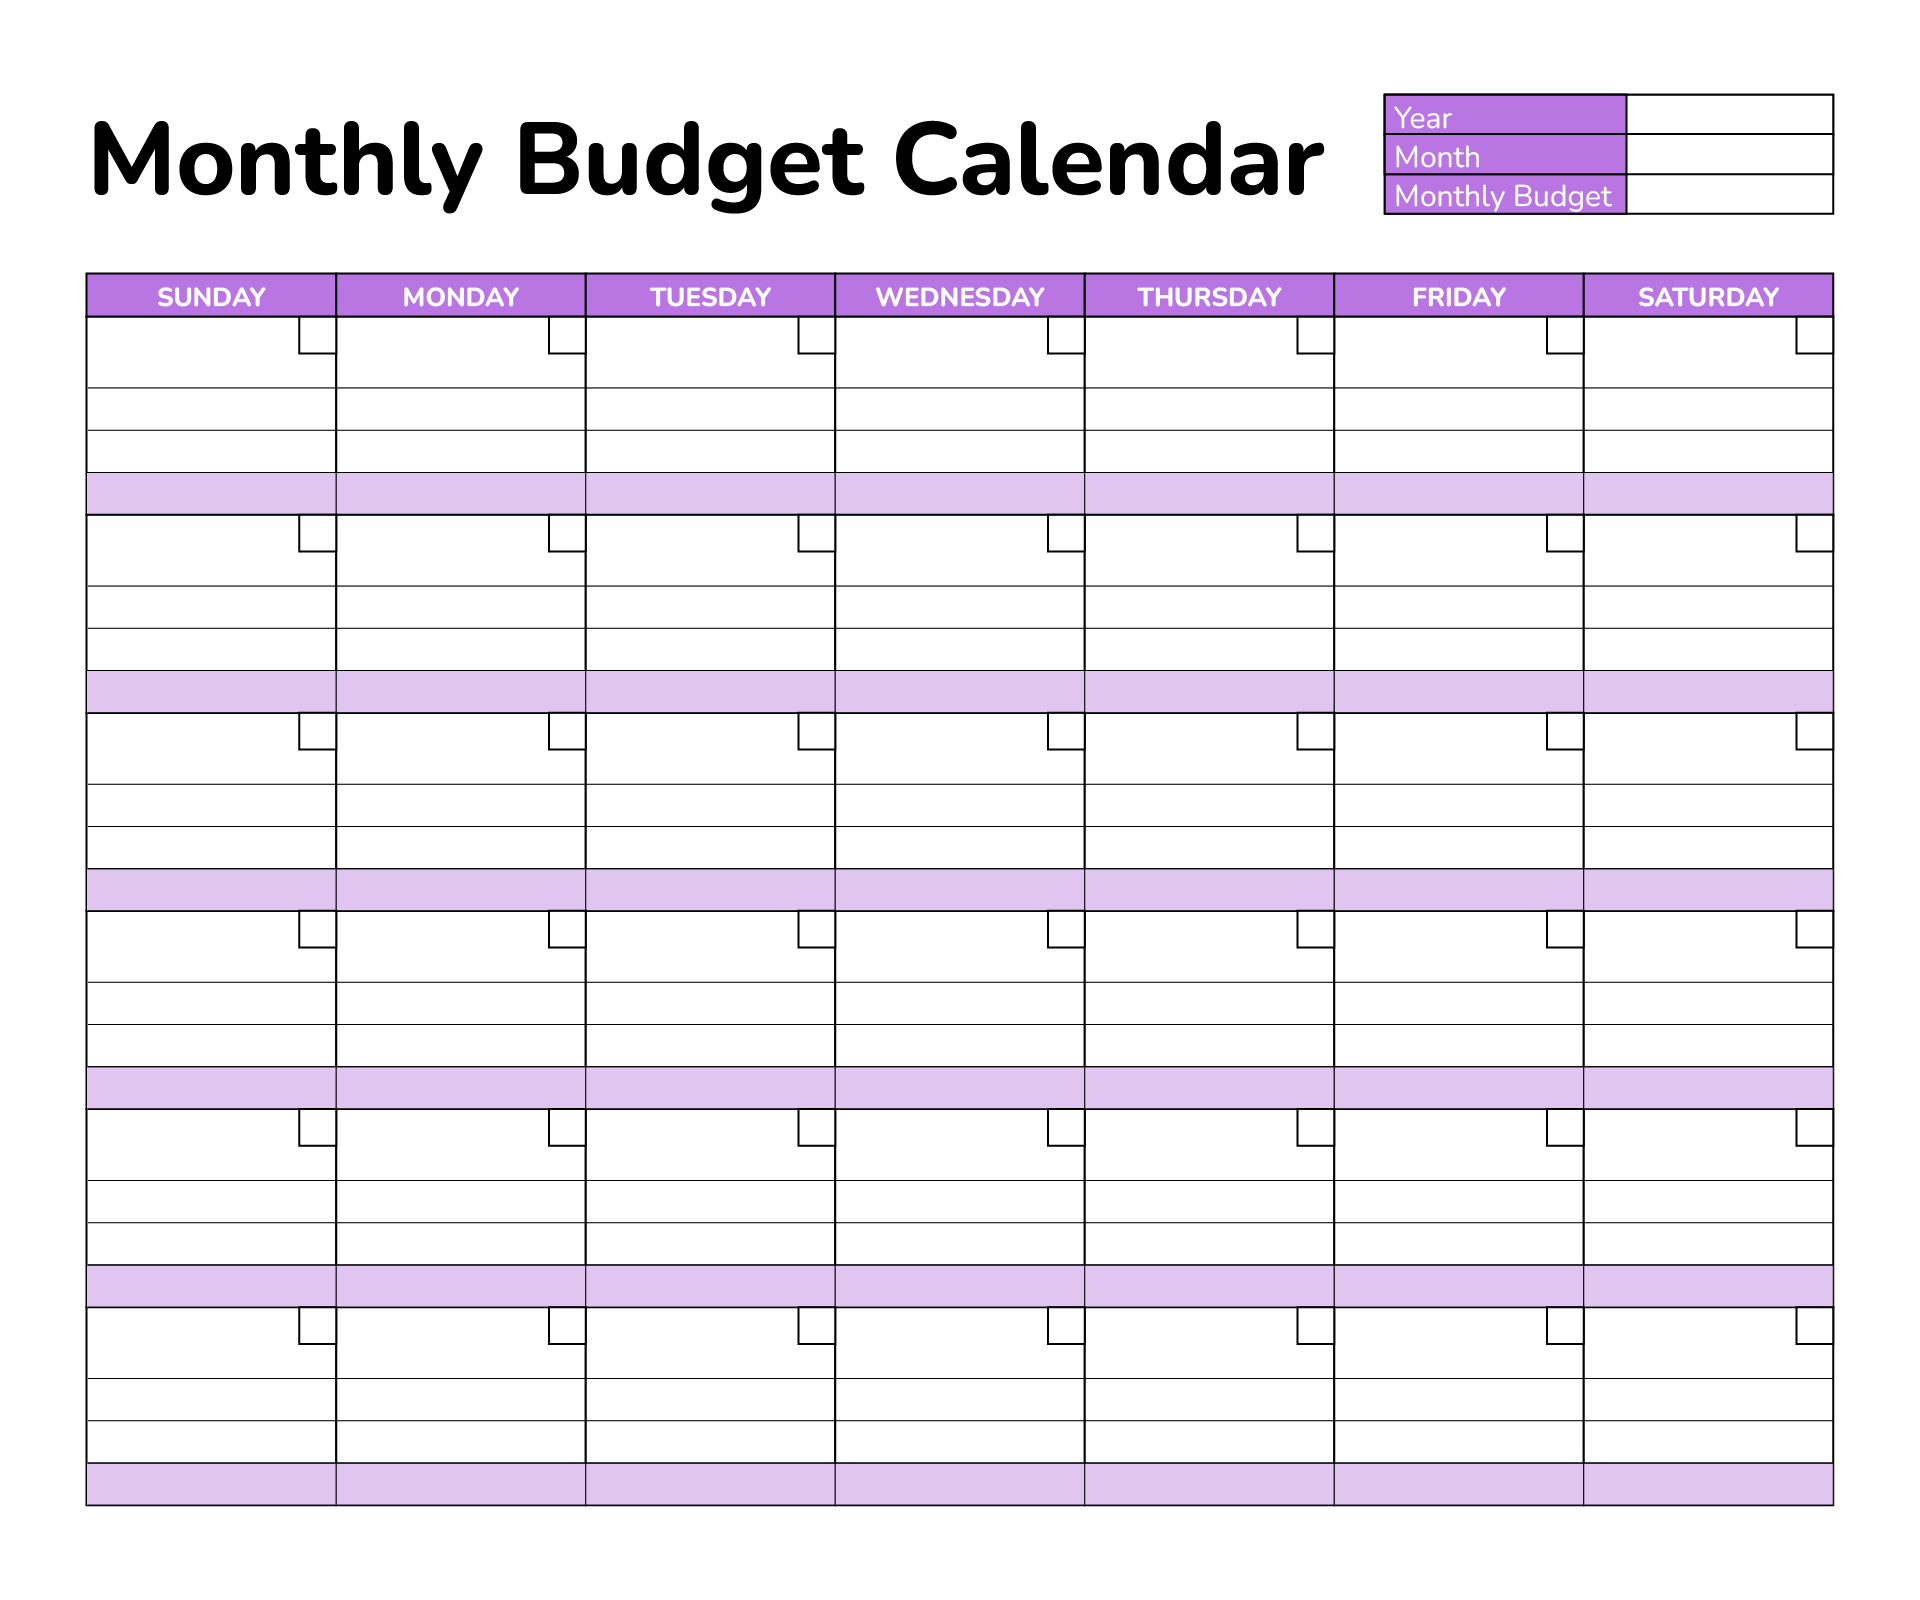 Expense Calendar For Home Budget